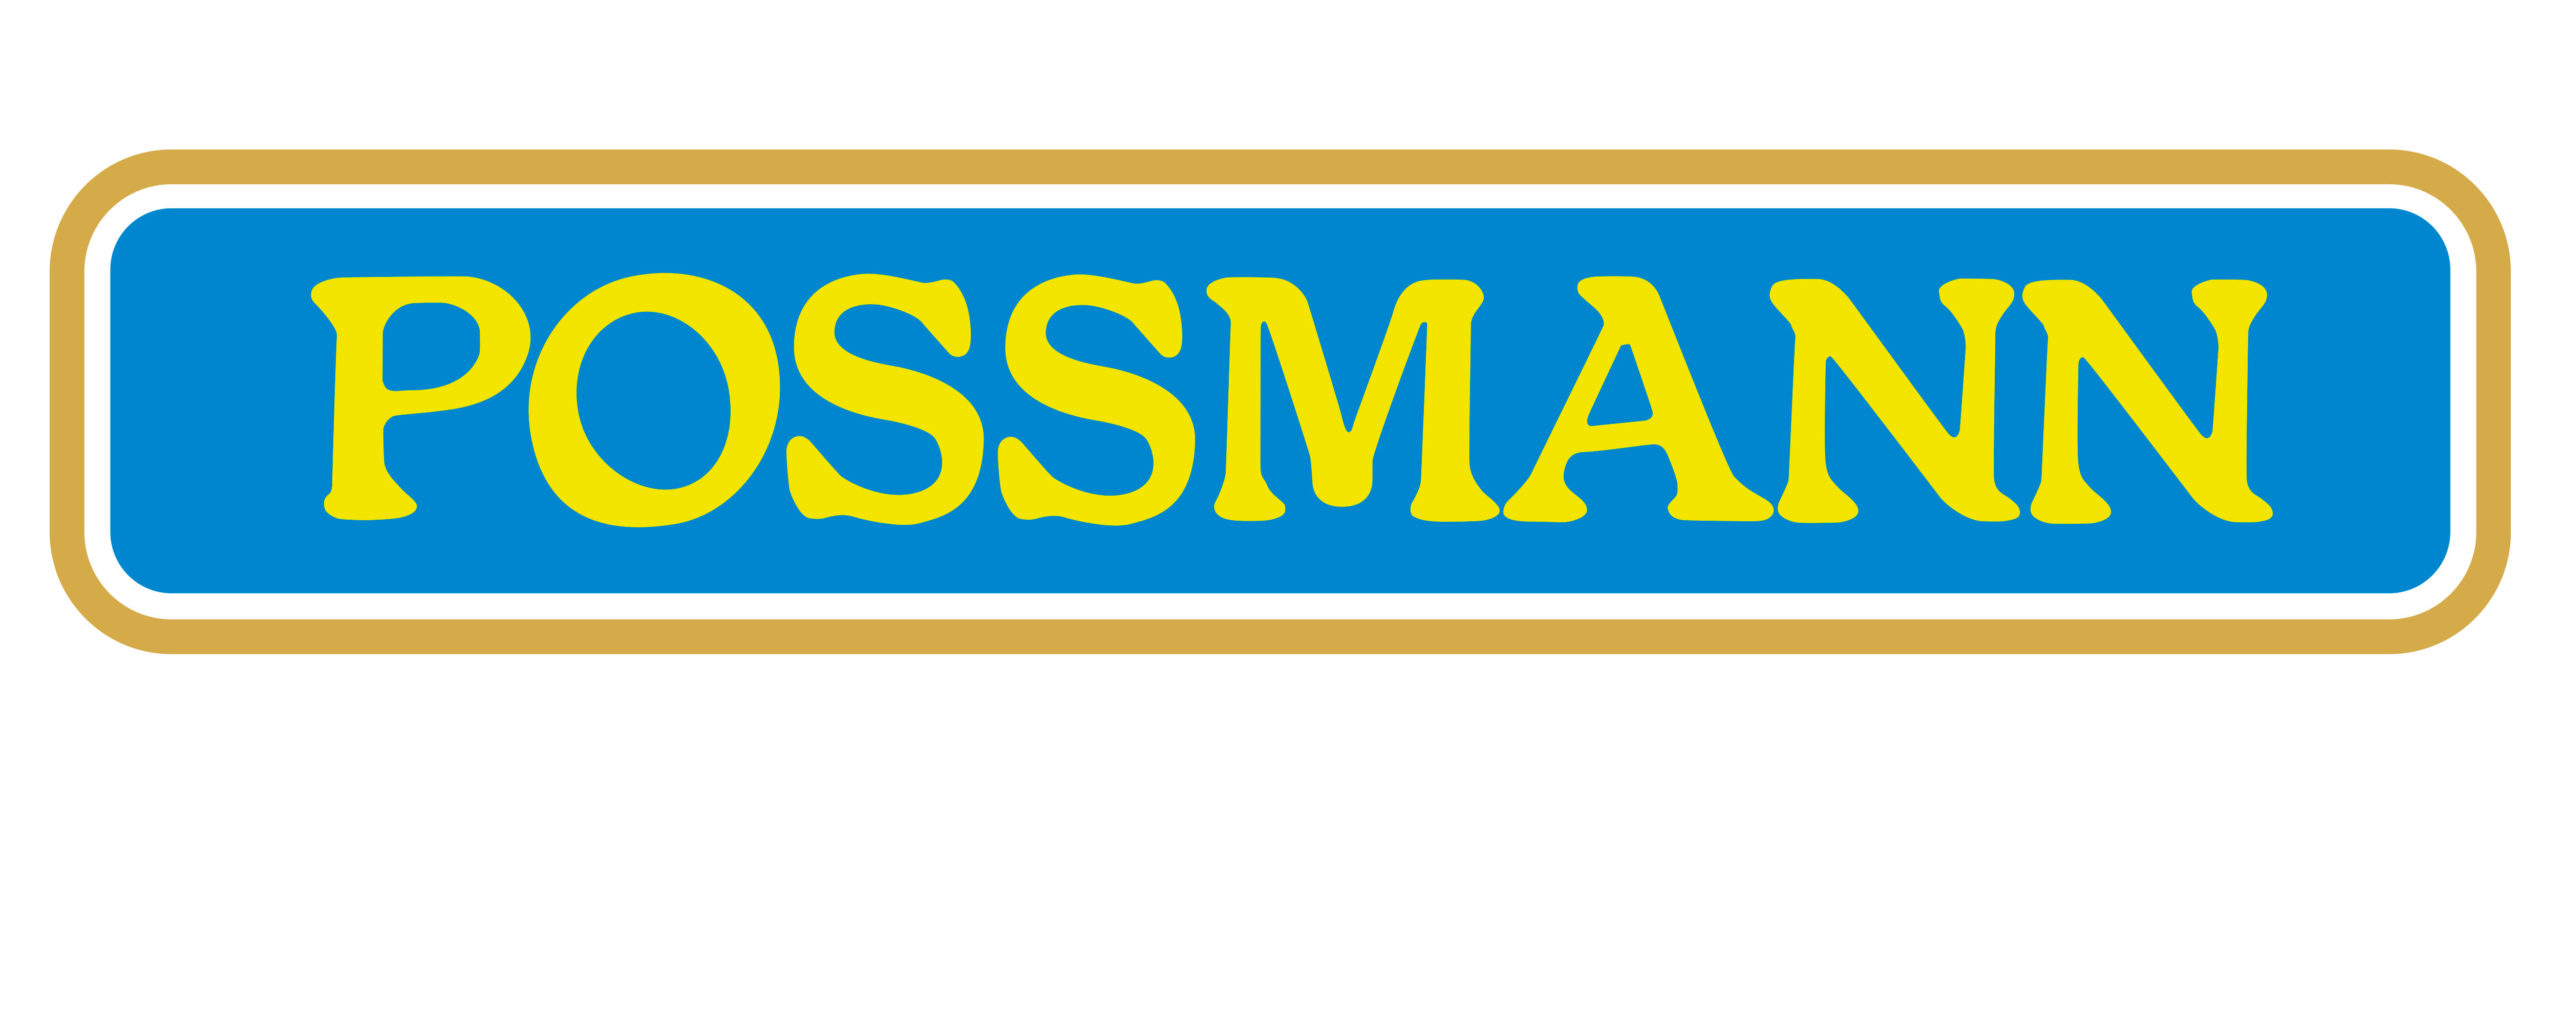 Logo der Kelterei Possmann. Der gelbe Possmann-Schriftzug erscheint auf blauem Grund.